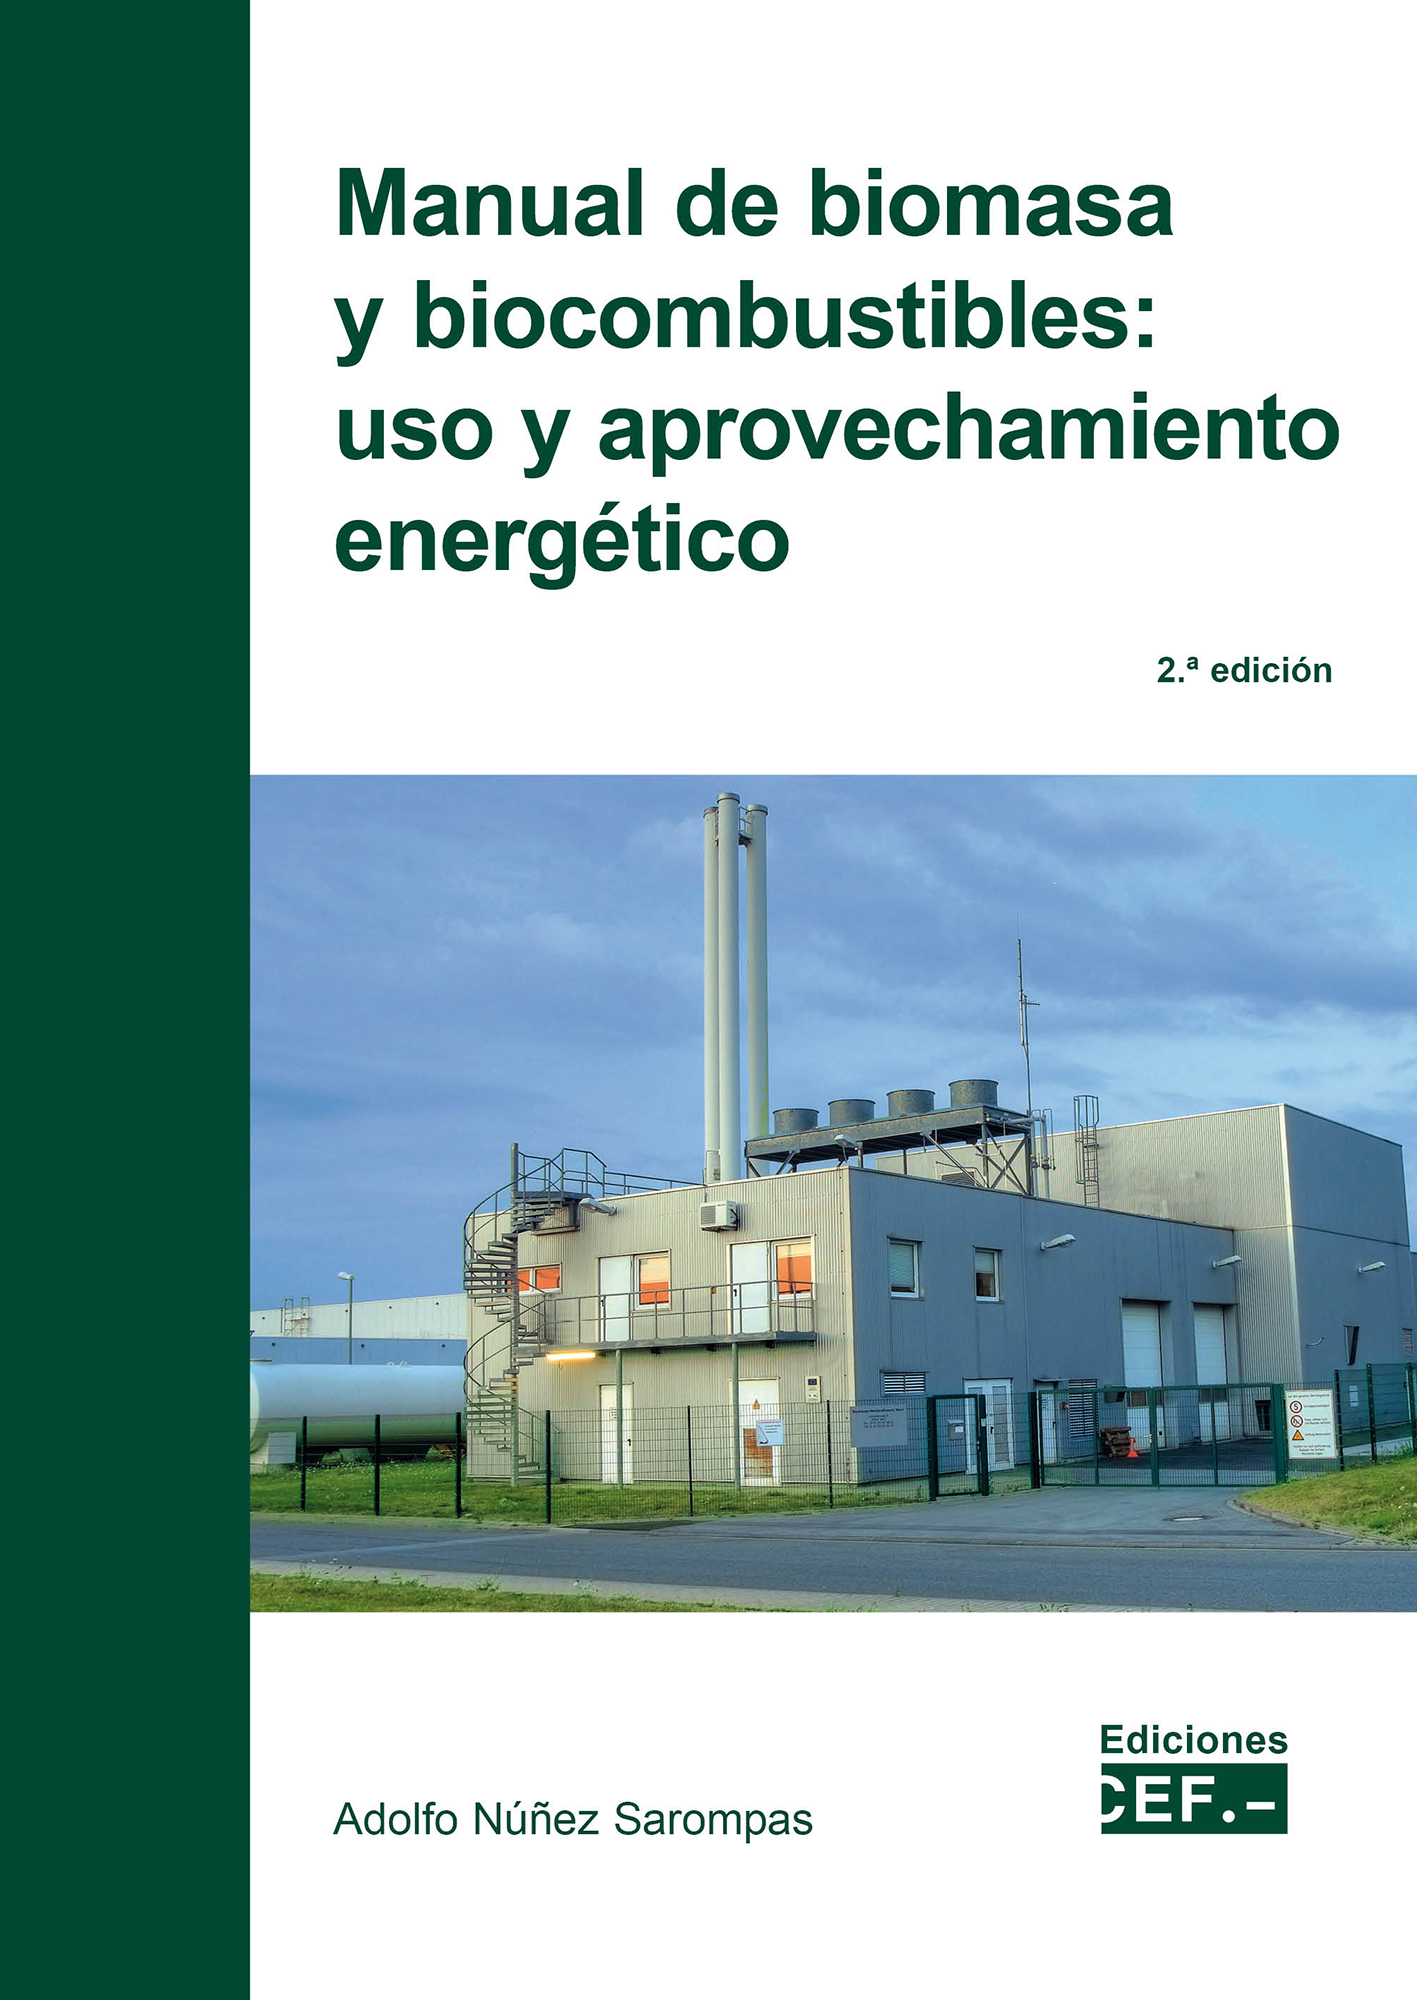 Manual de biomasa y biocombustible. 9788445443095